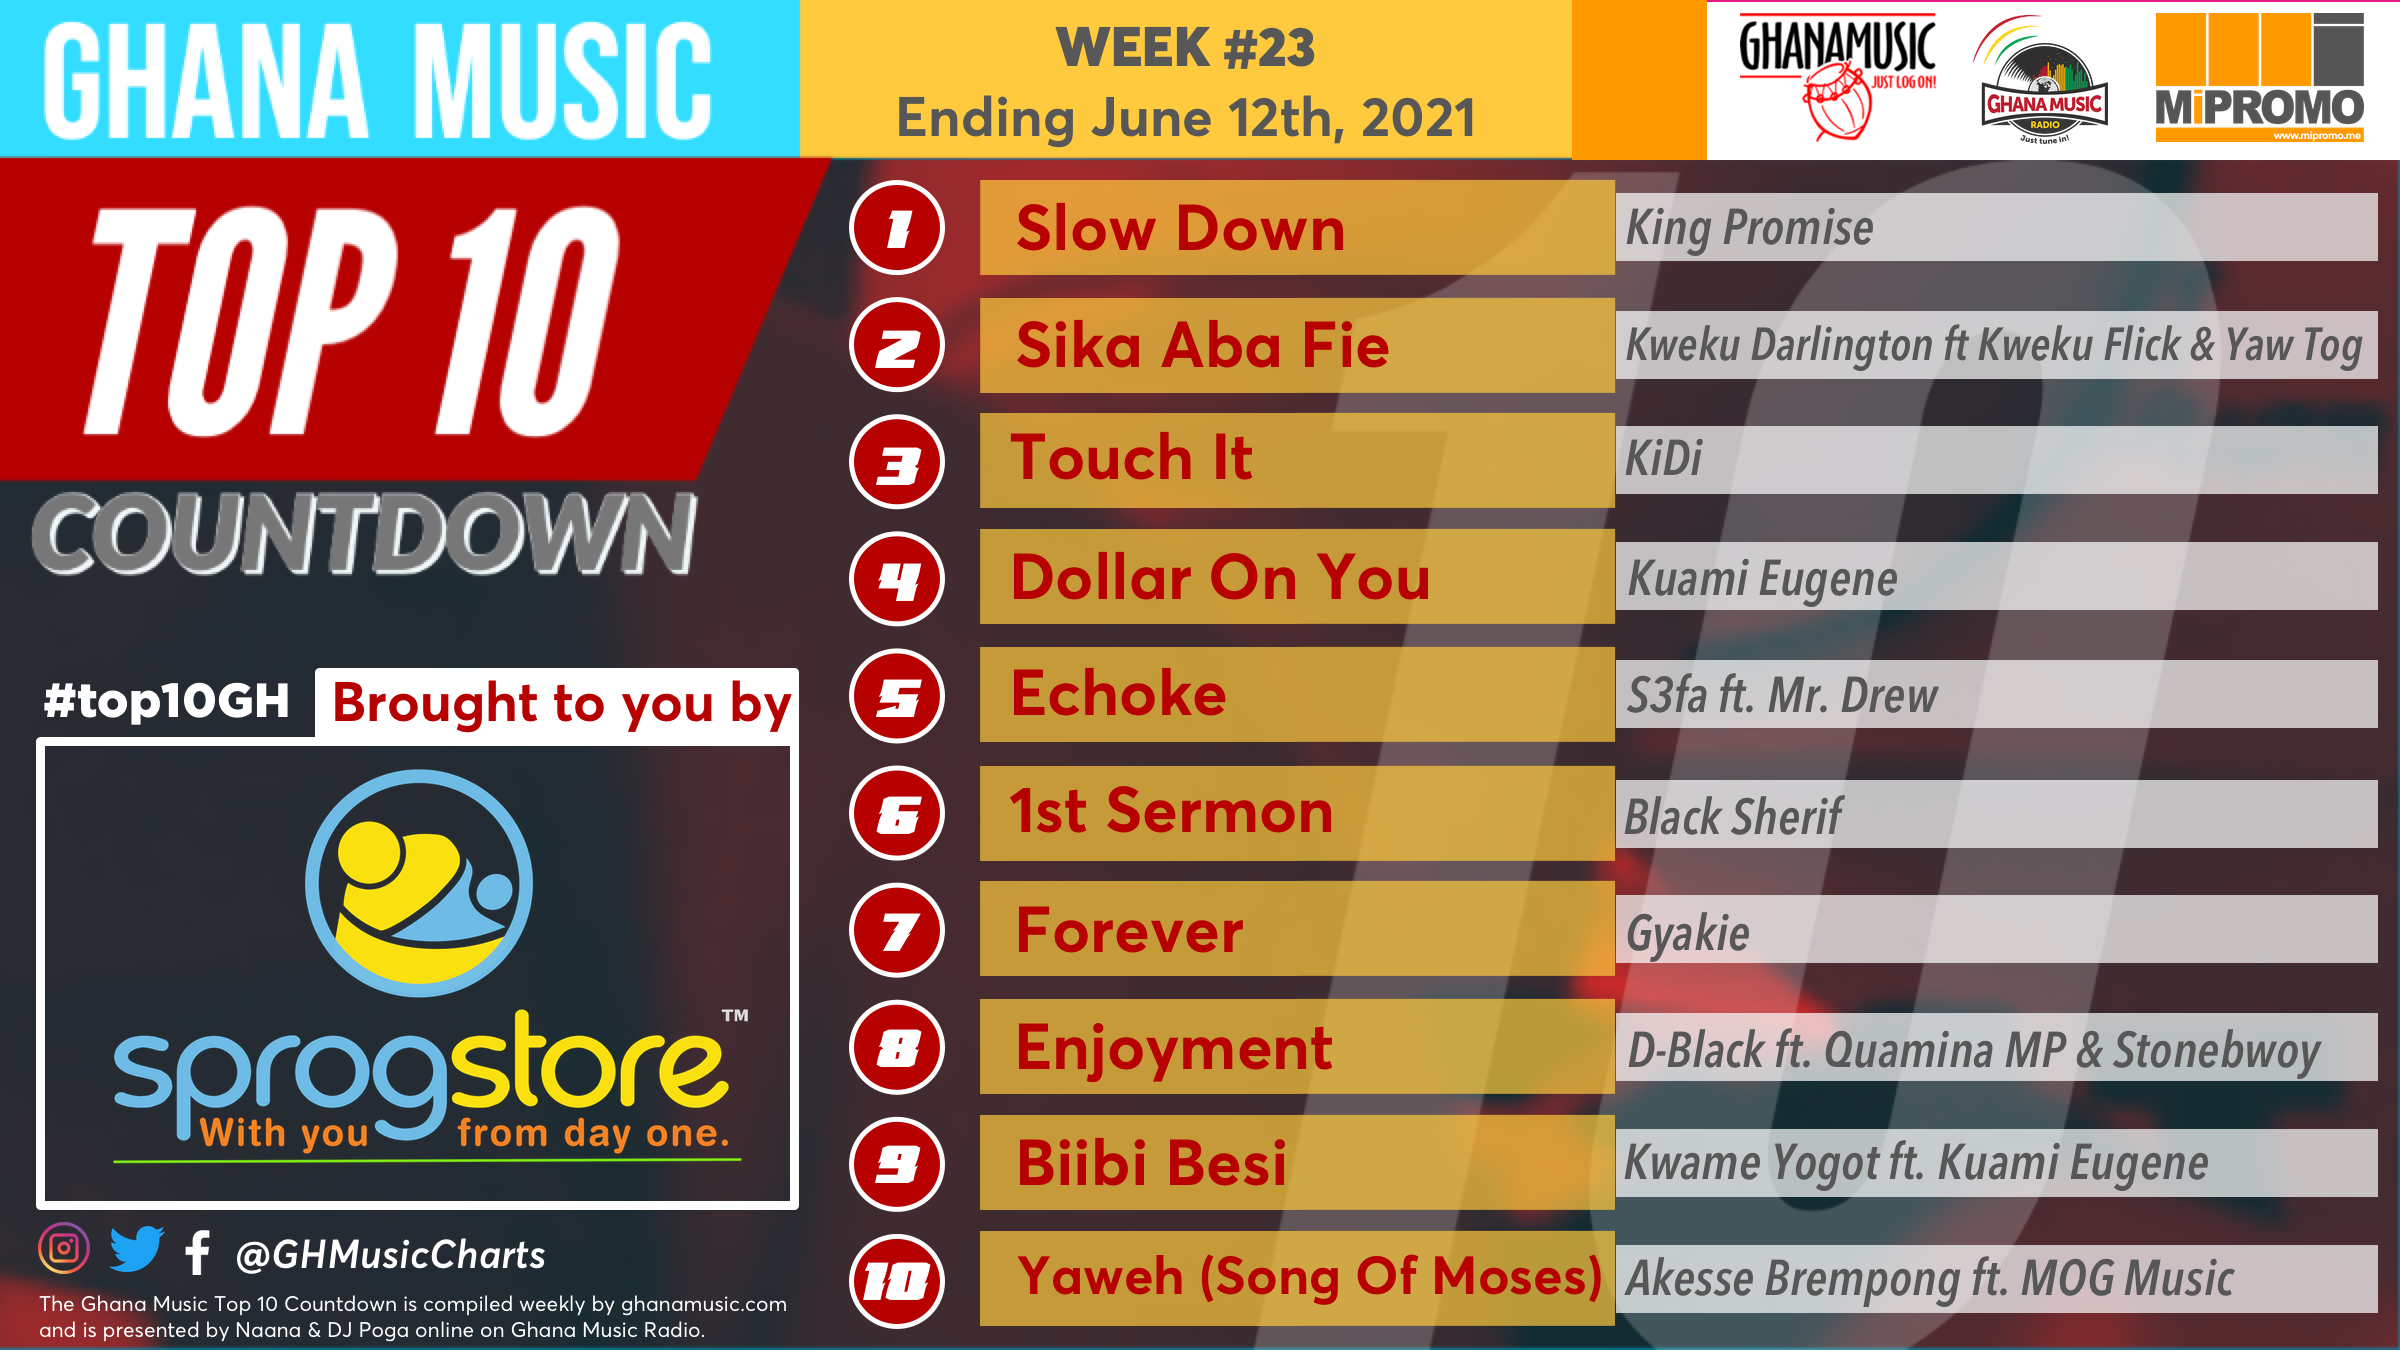 2021 Week 23: Ghana Music Top 10 Countdown